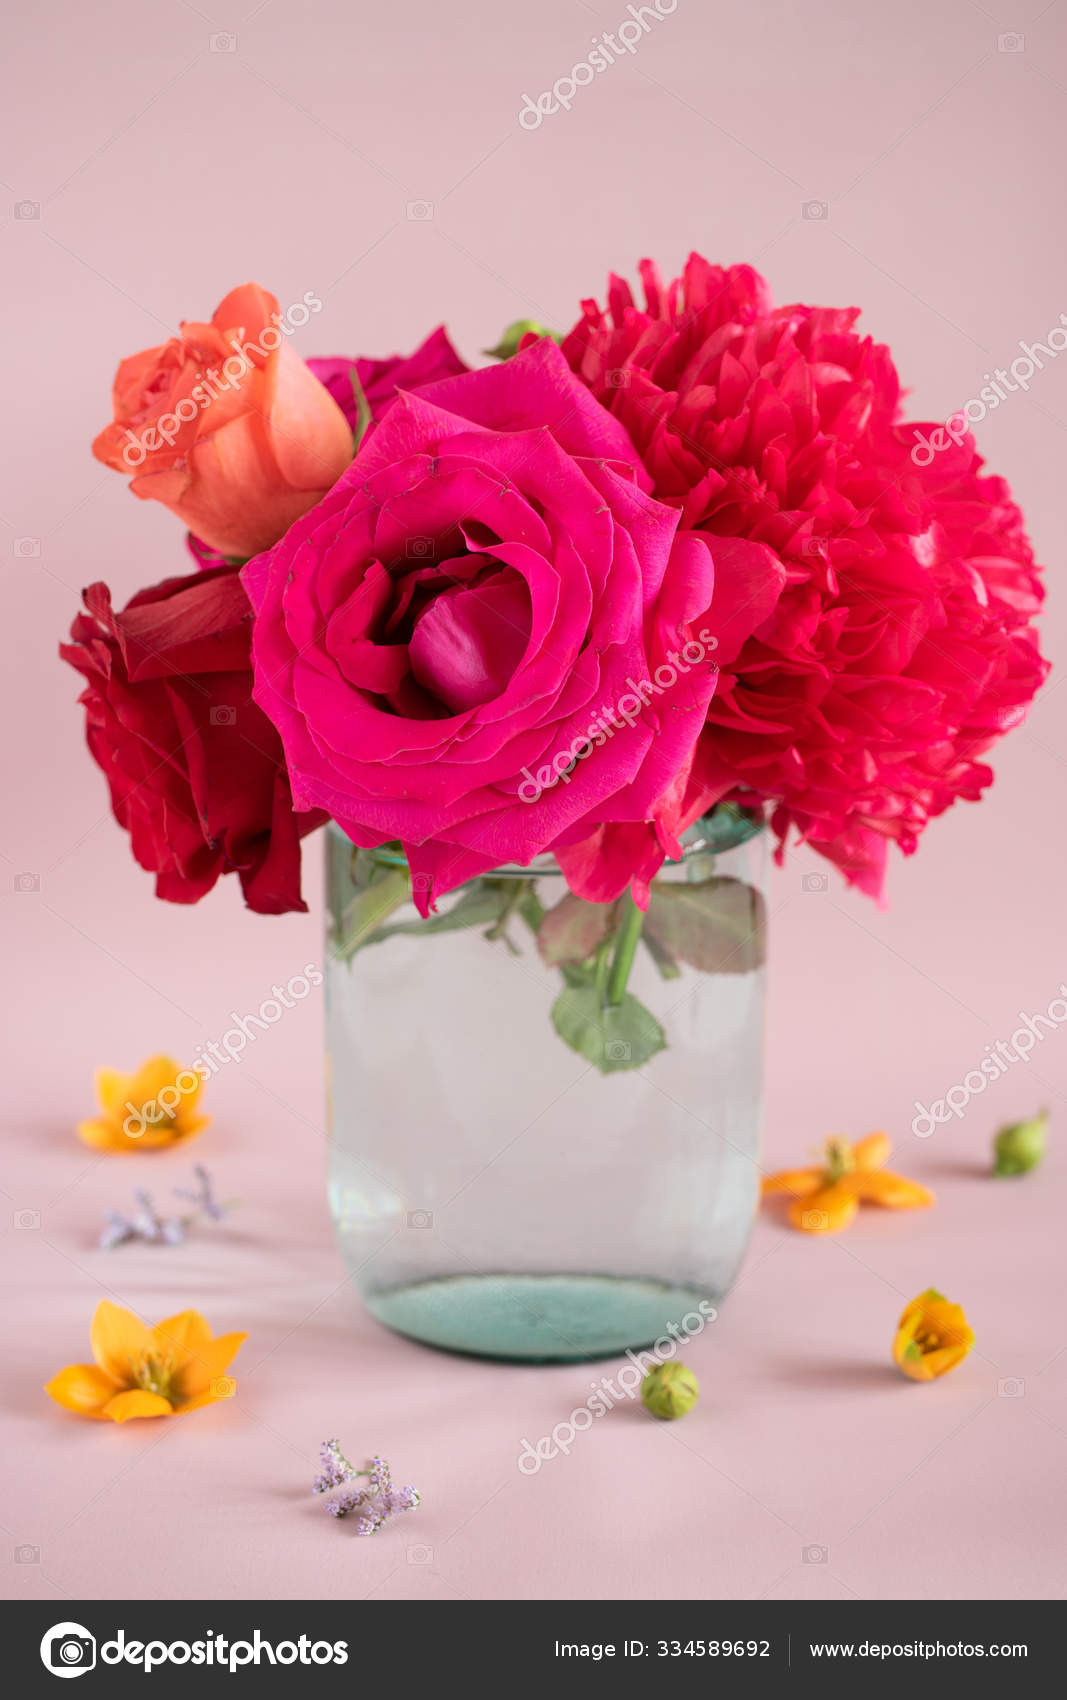 Ramo de peonías y rosas rojas y rosadas en un jarrón de vidrio con agua  sobre un fondo rosa: fotografía de stock © MalinkaGalina #334589692 |  Depositphotos